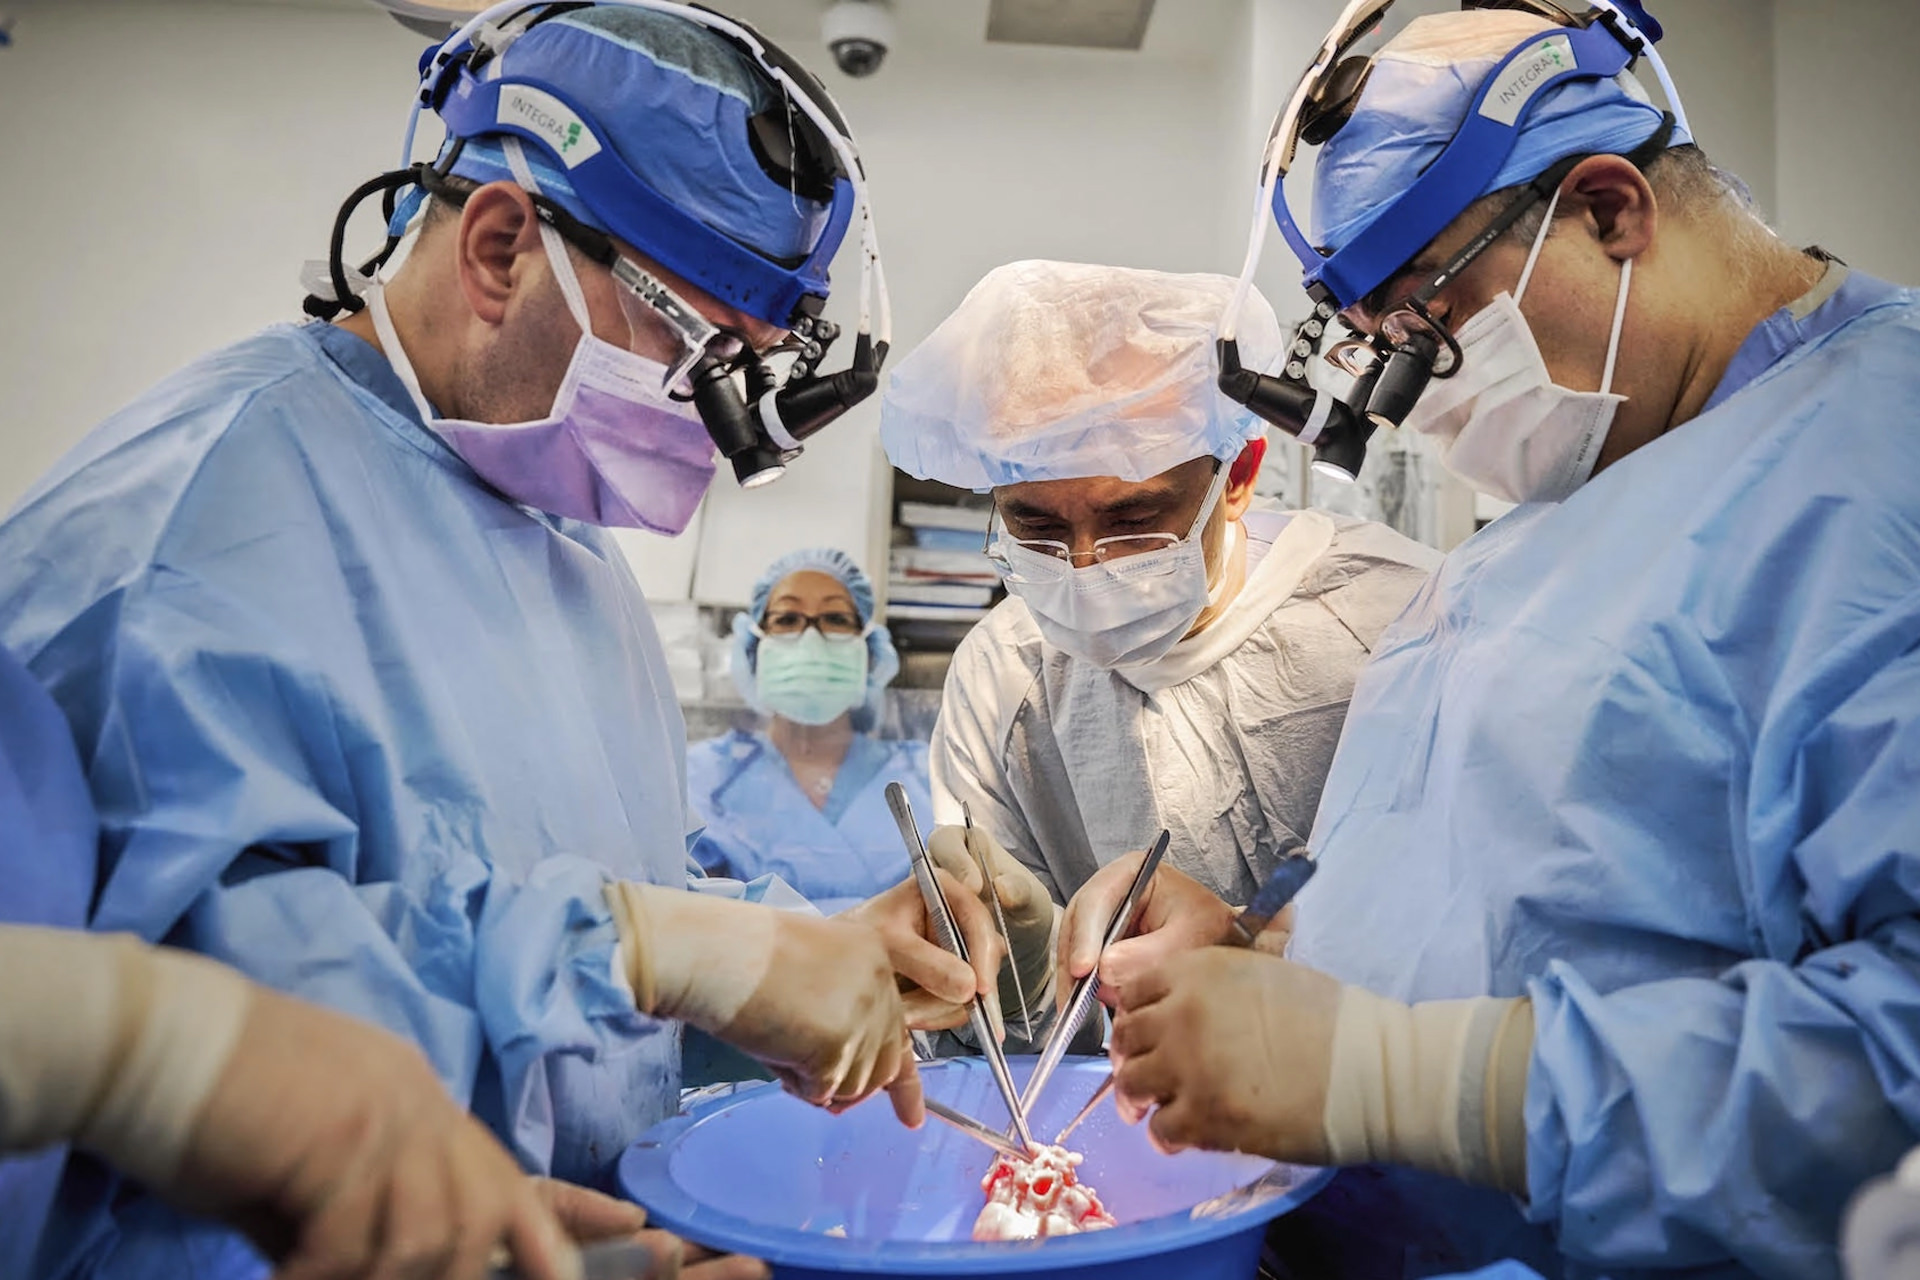 تیم پزشکی به سرپرستی جراح ایرانی، قلب خوک را به دو بیمار مرگ مغزی پیوند زد